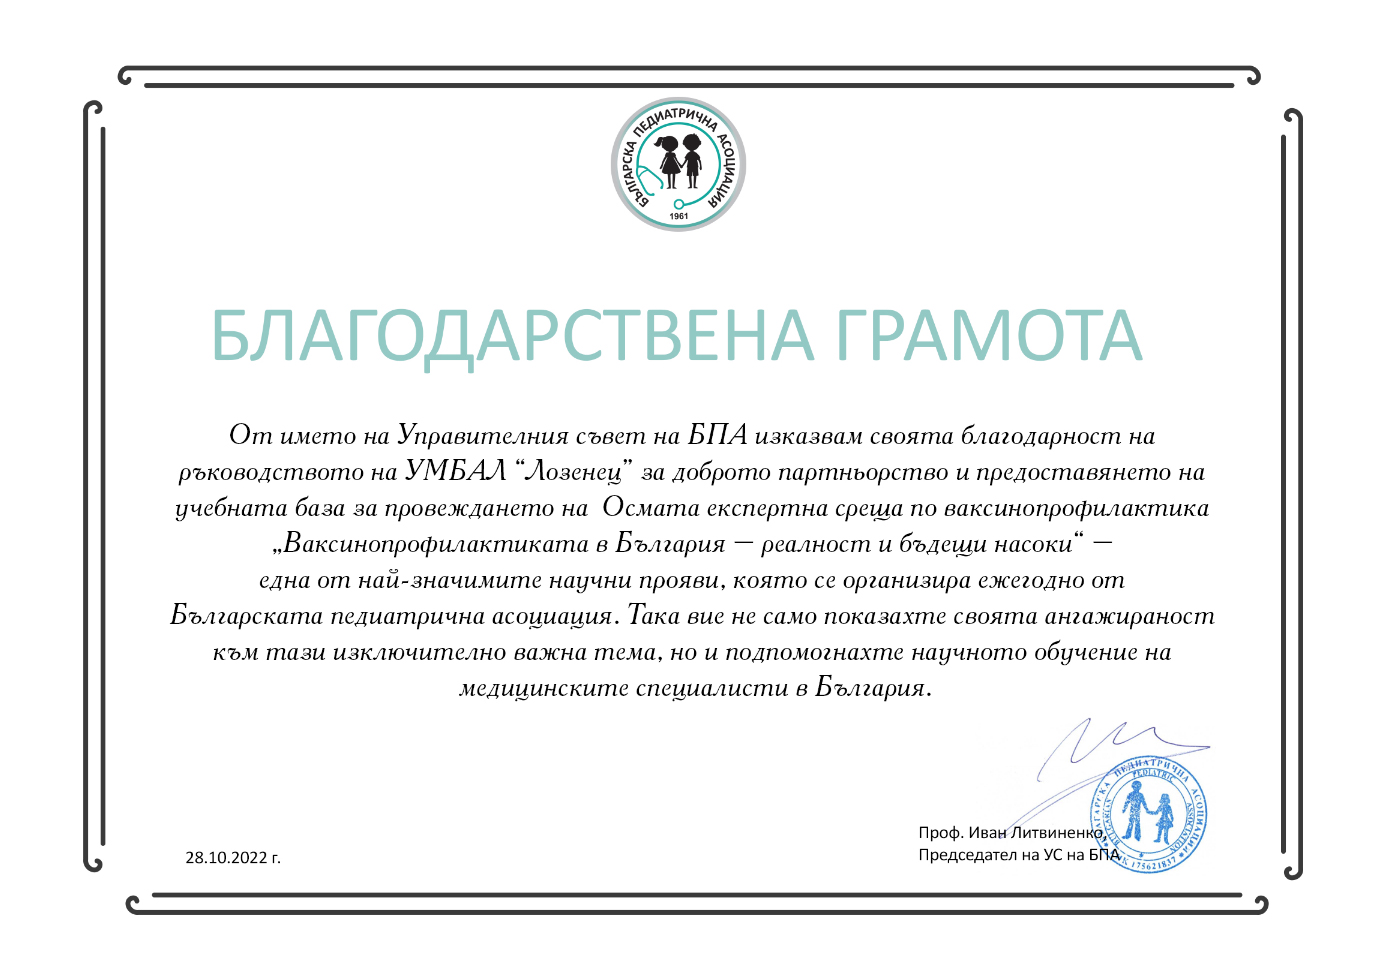 Благодарствена грамота от Управителния съвет на Българската педиатрична асоциация към ръководството